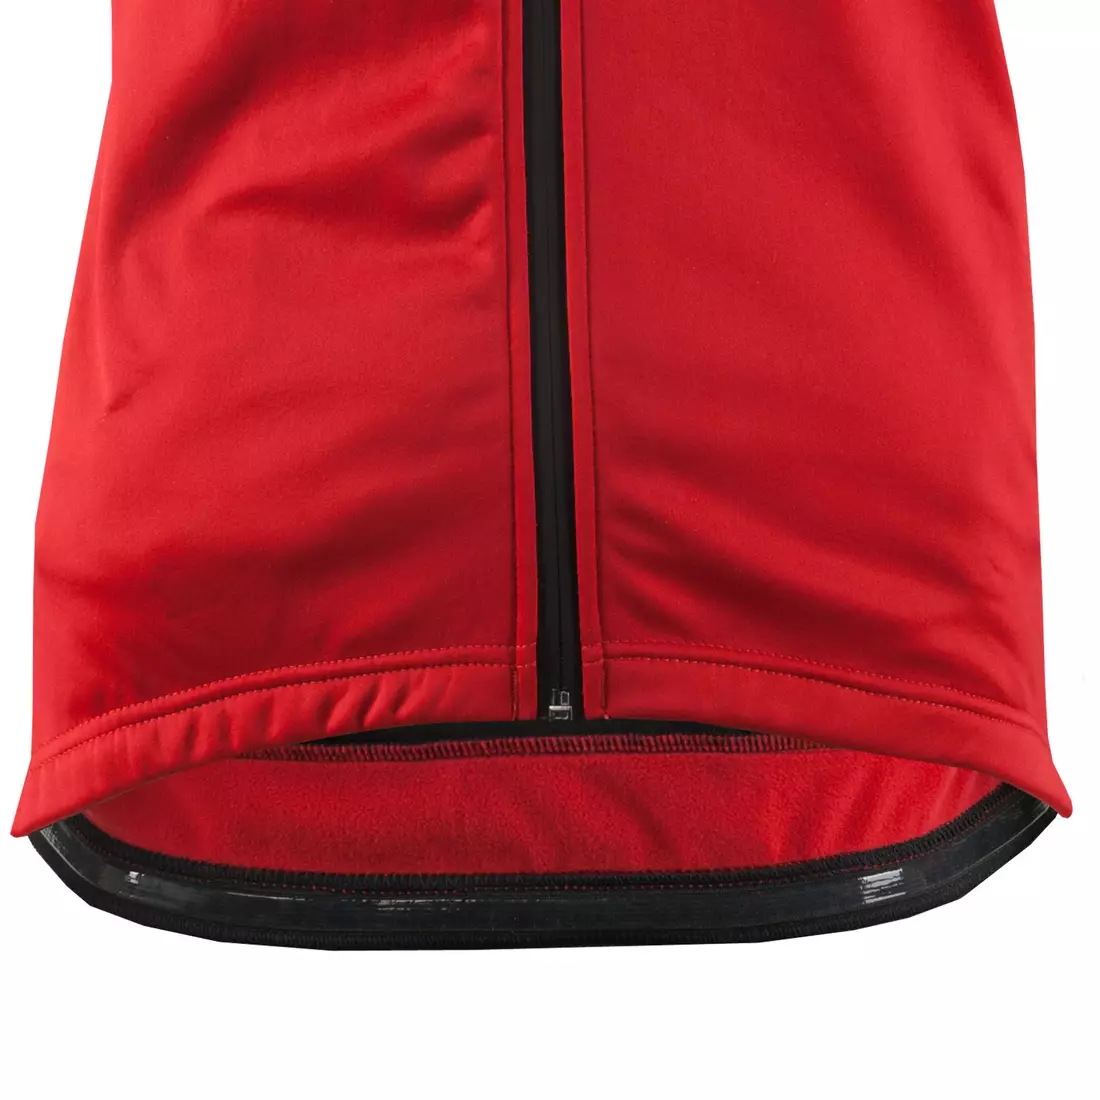 KAYMAQ JWS-003 férfi téli kerékpáros kabát softshell piros